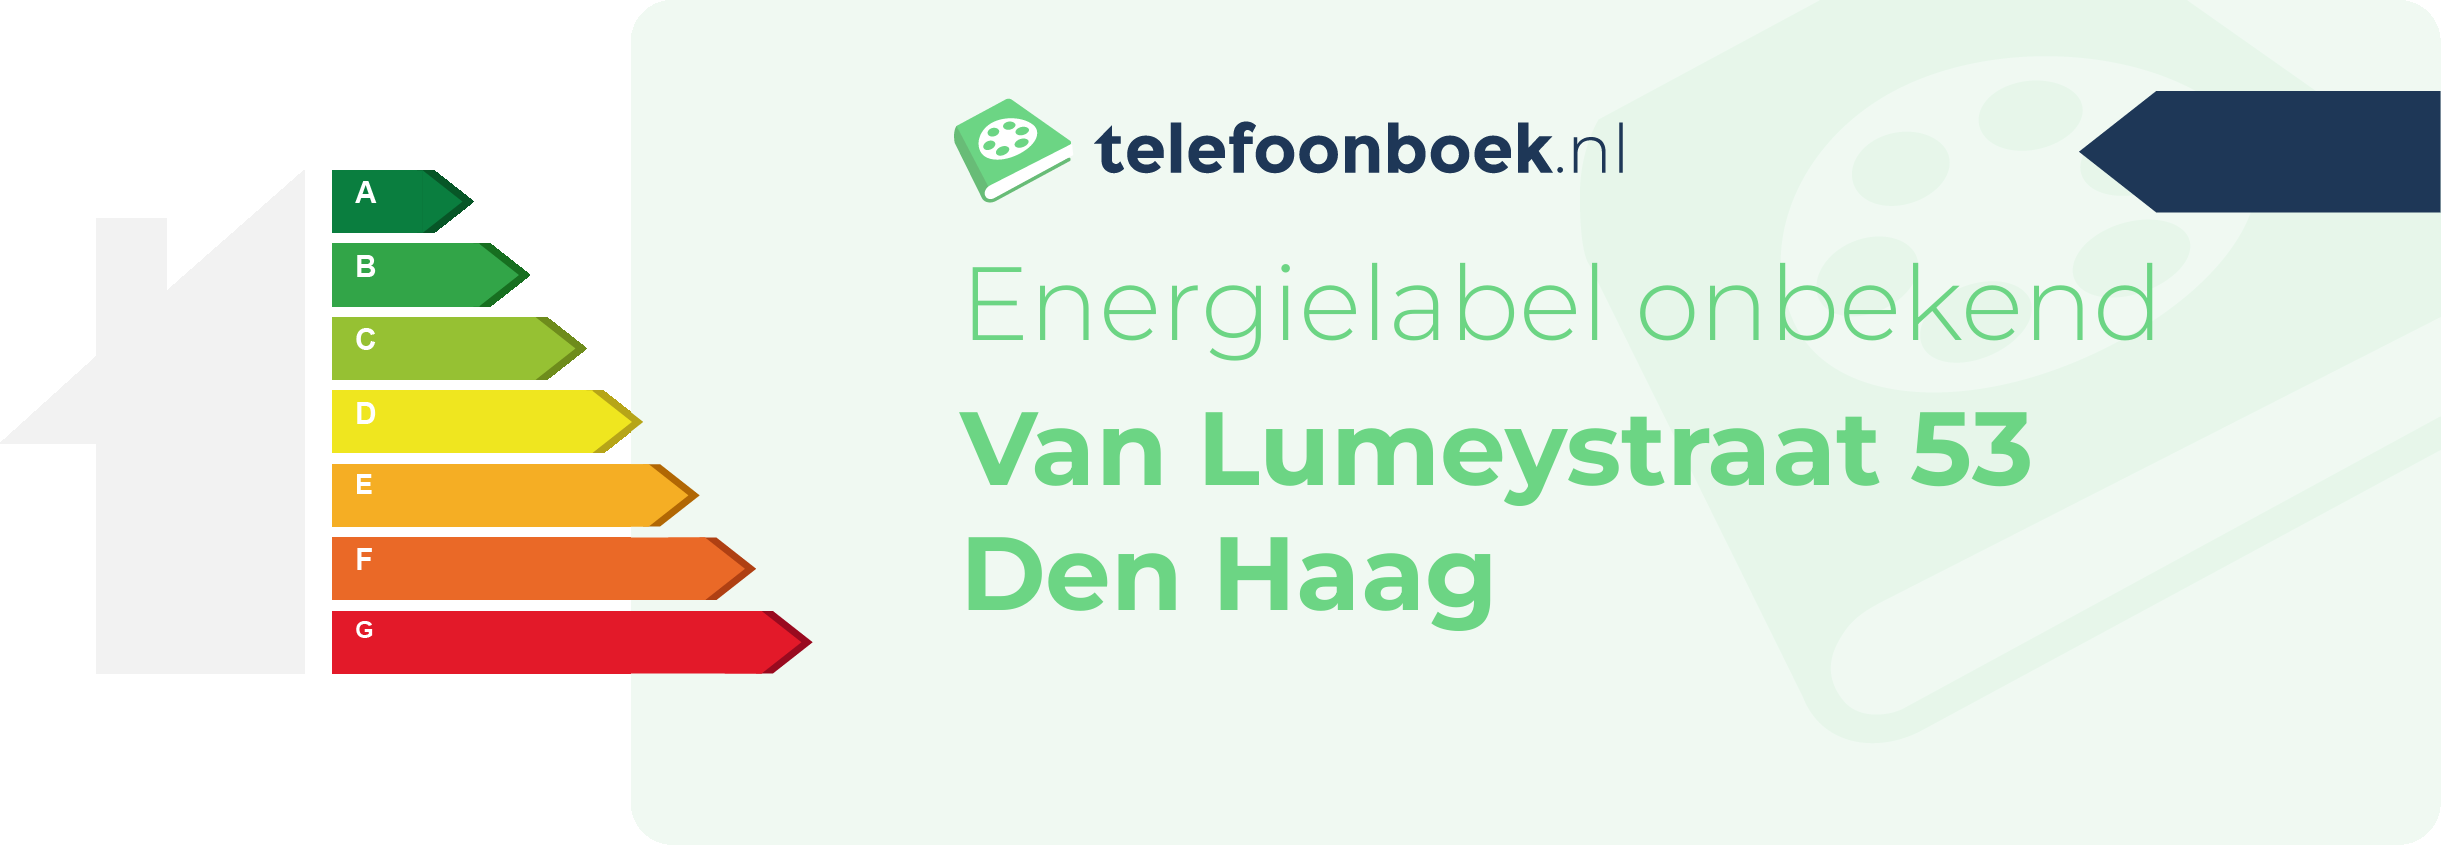 Energielabel Van Lumeystraat 53 Den Haag